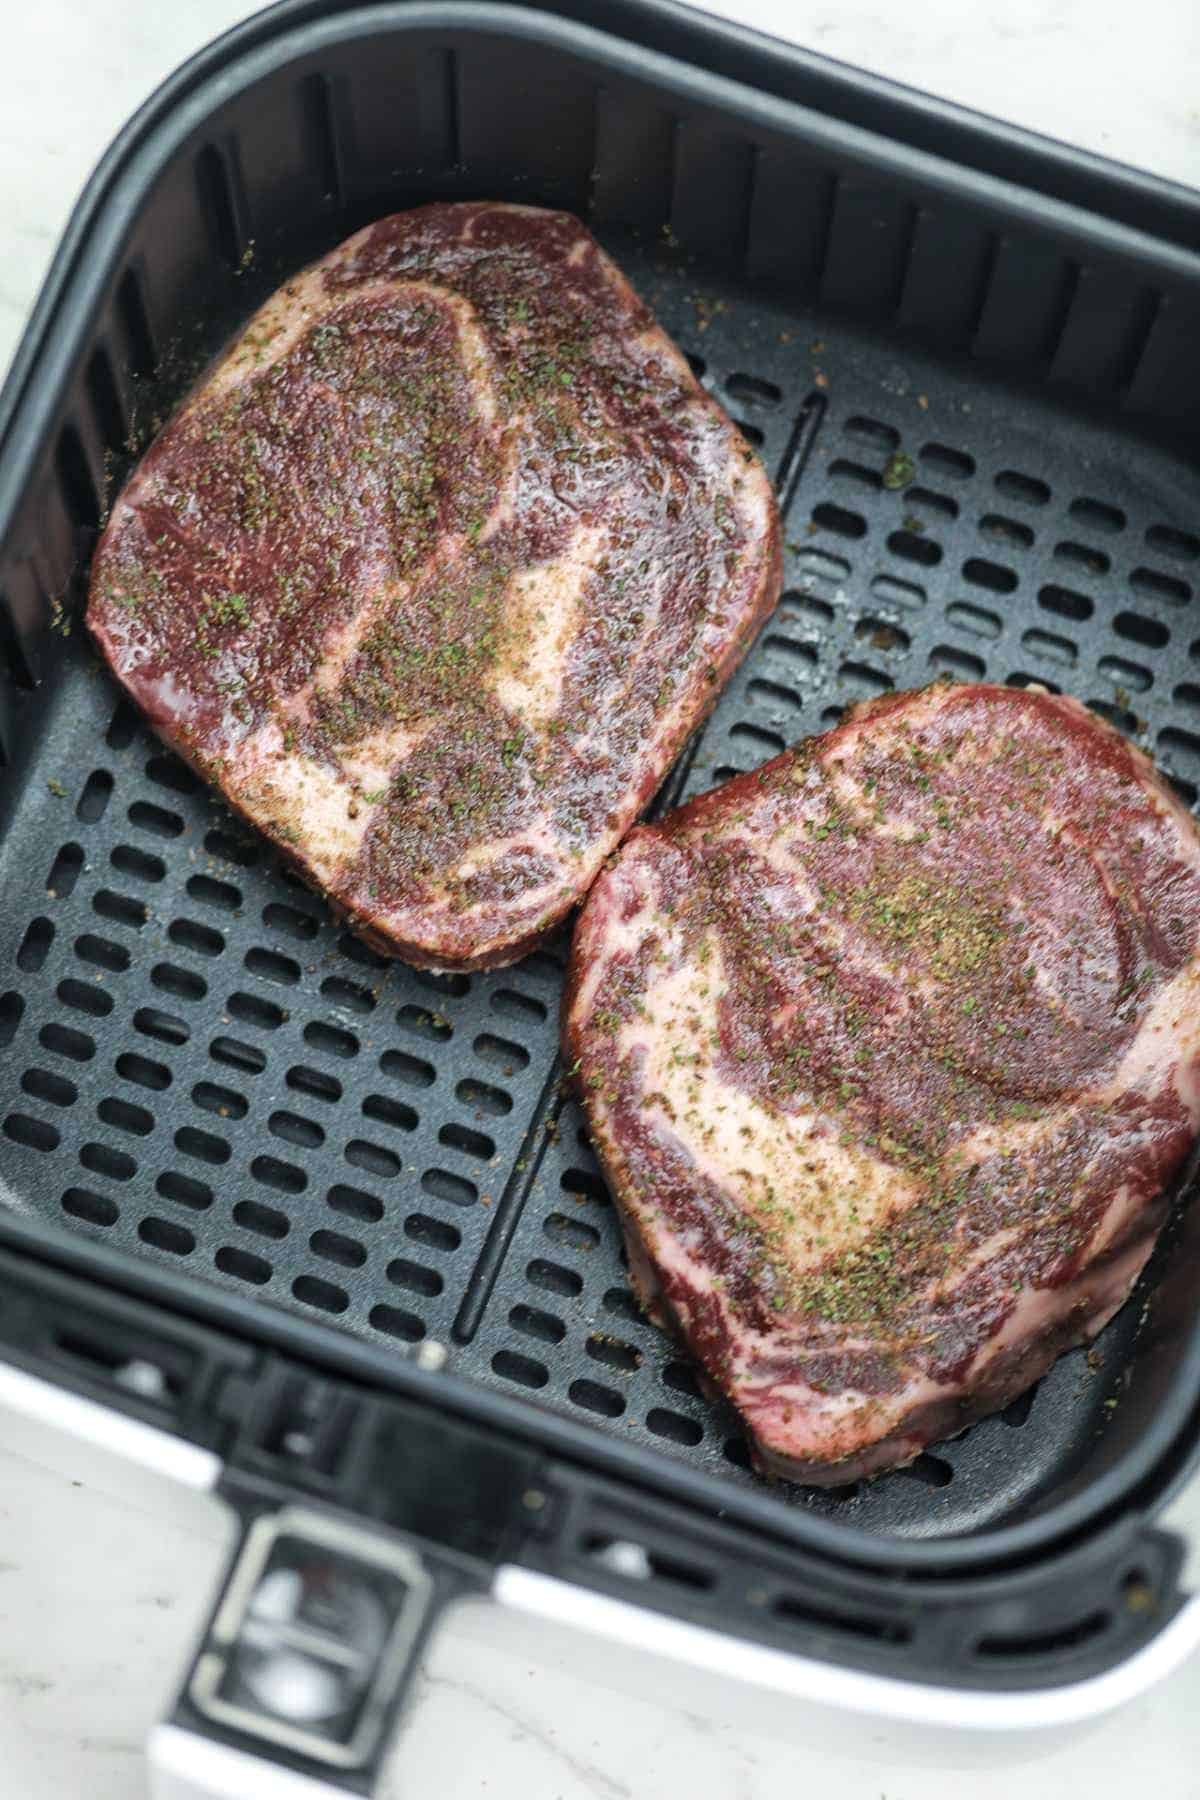 seasoned steaks in air fryer basket.